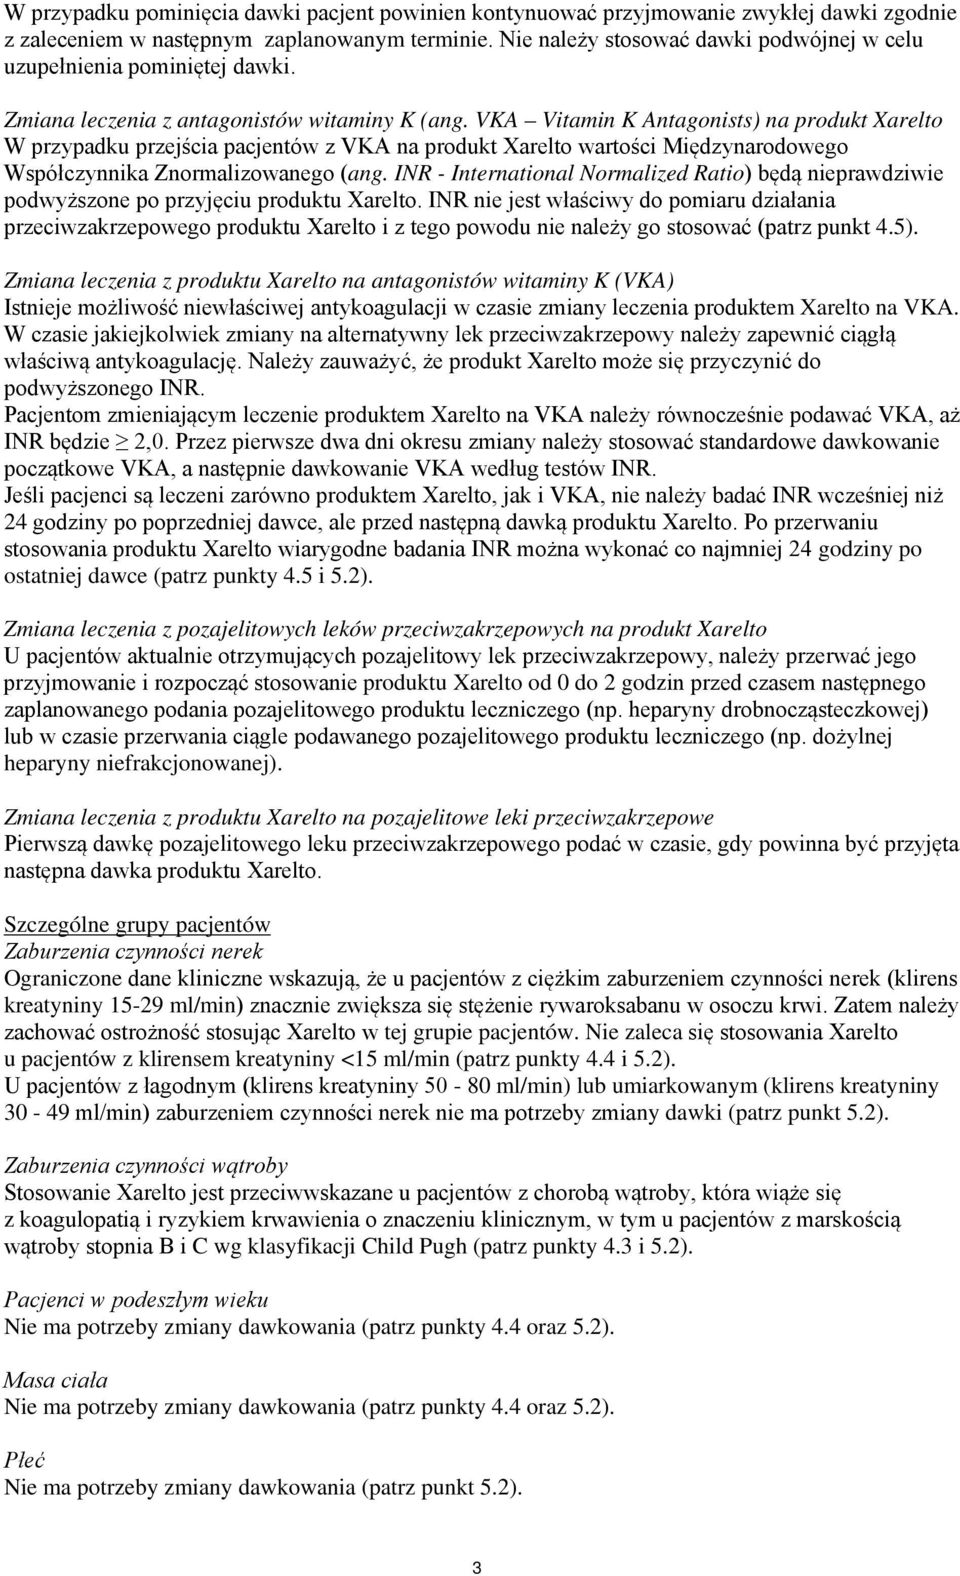 VKA Vitamin K Antagonists) na produkt Xarelto W przypadku przejścia pacjentów z VKA na produkt Xarelto wartości Międzynarodowego Współczynnika Znormalizowanego (ang.